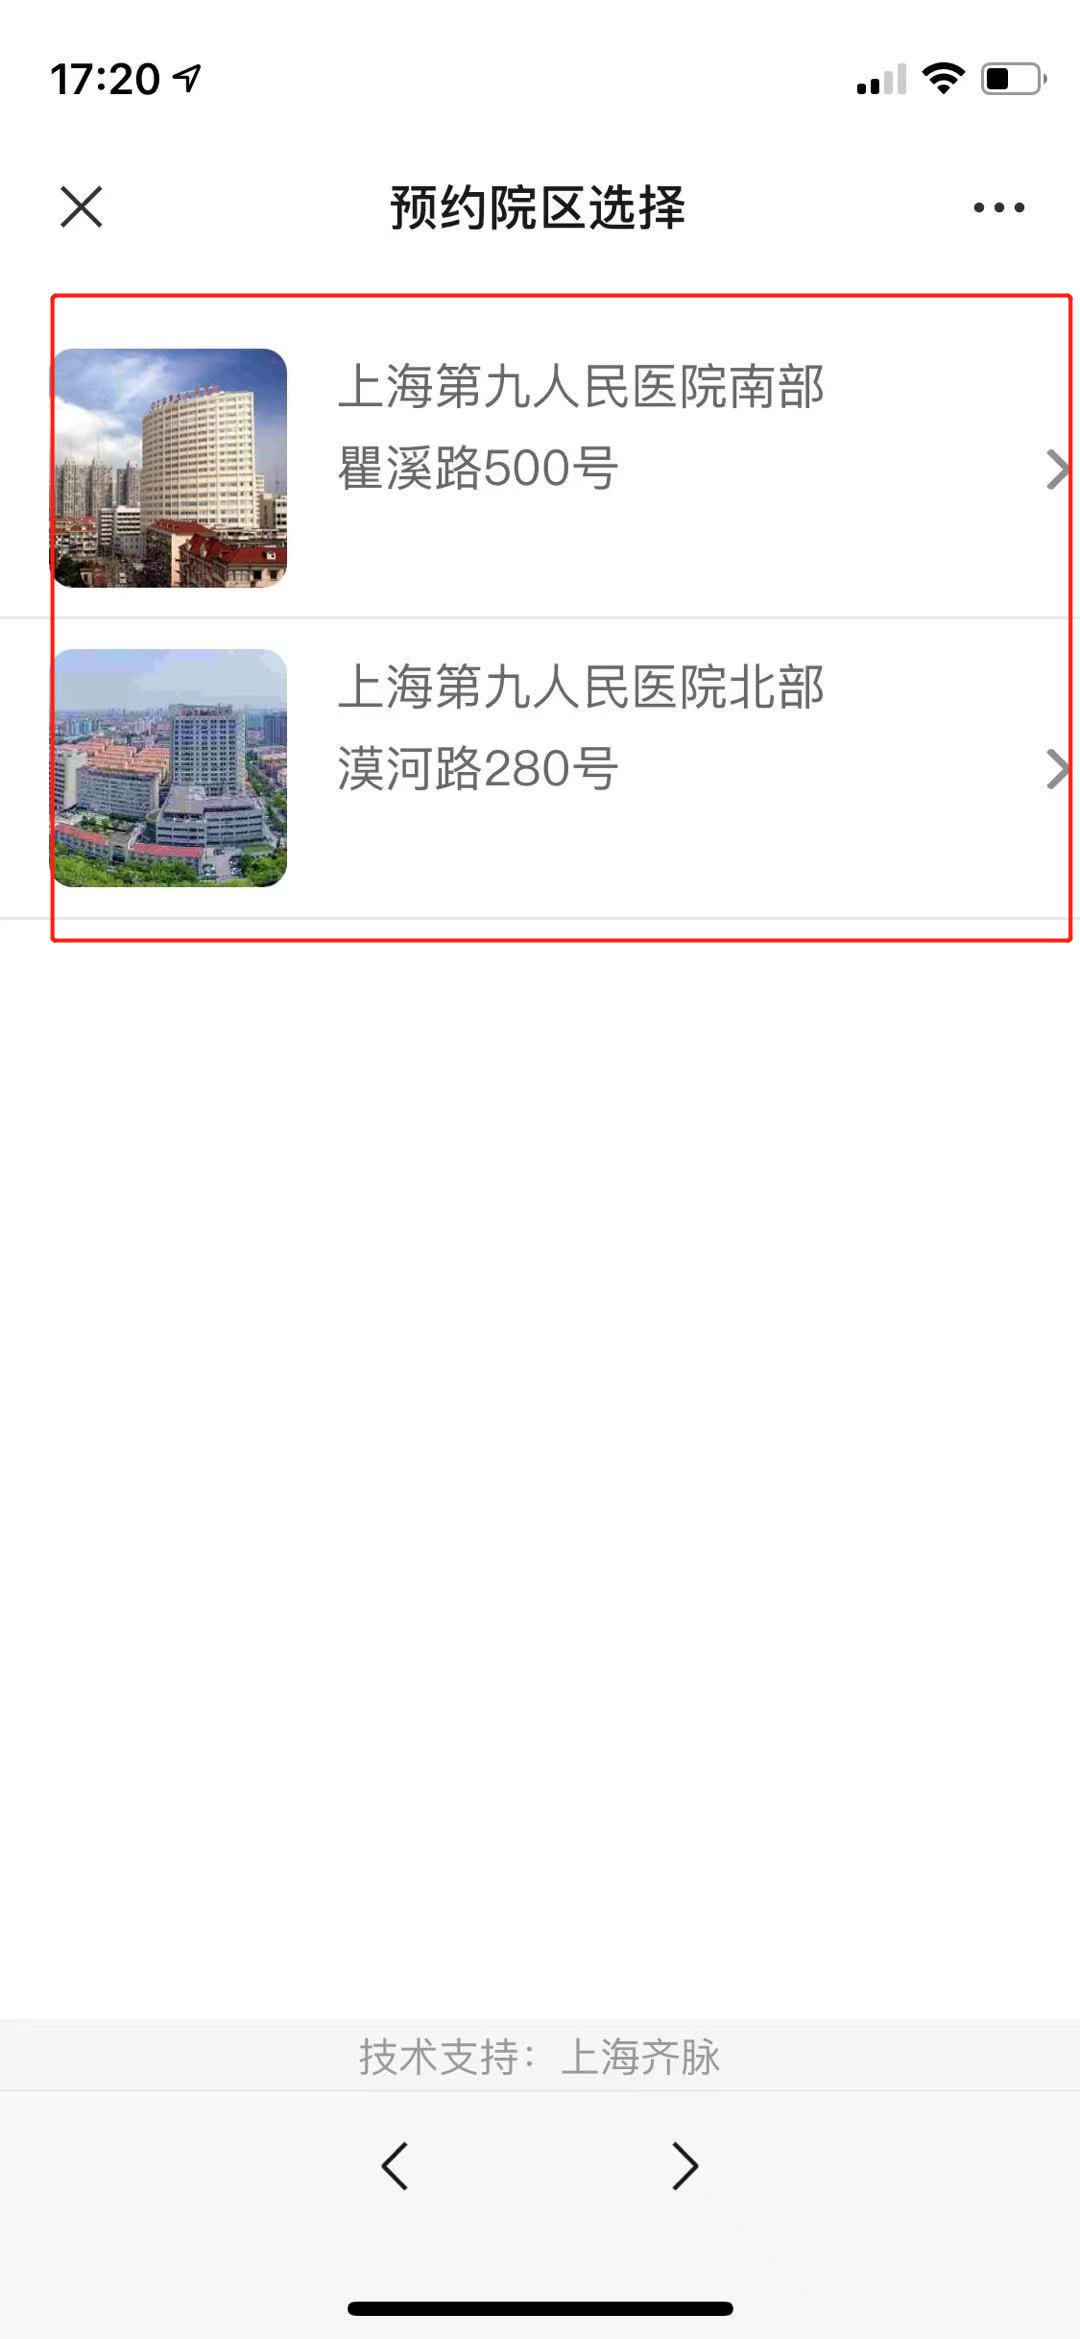 上海第九人民医院如何微信预约挂号？